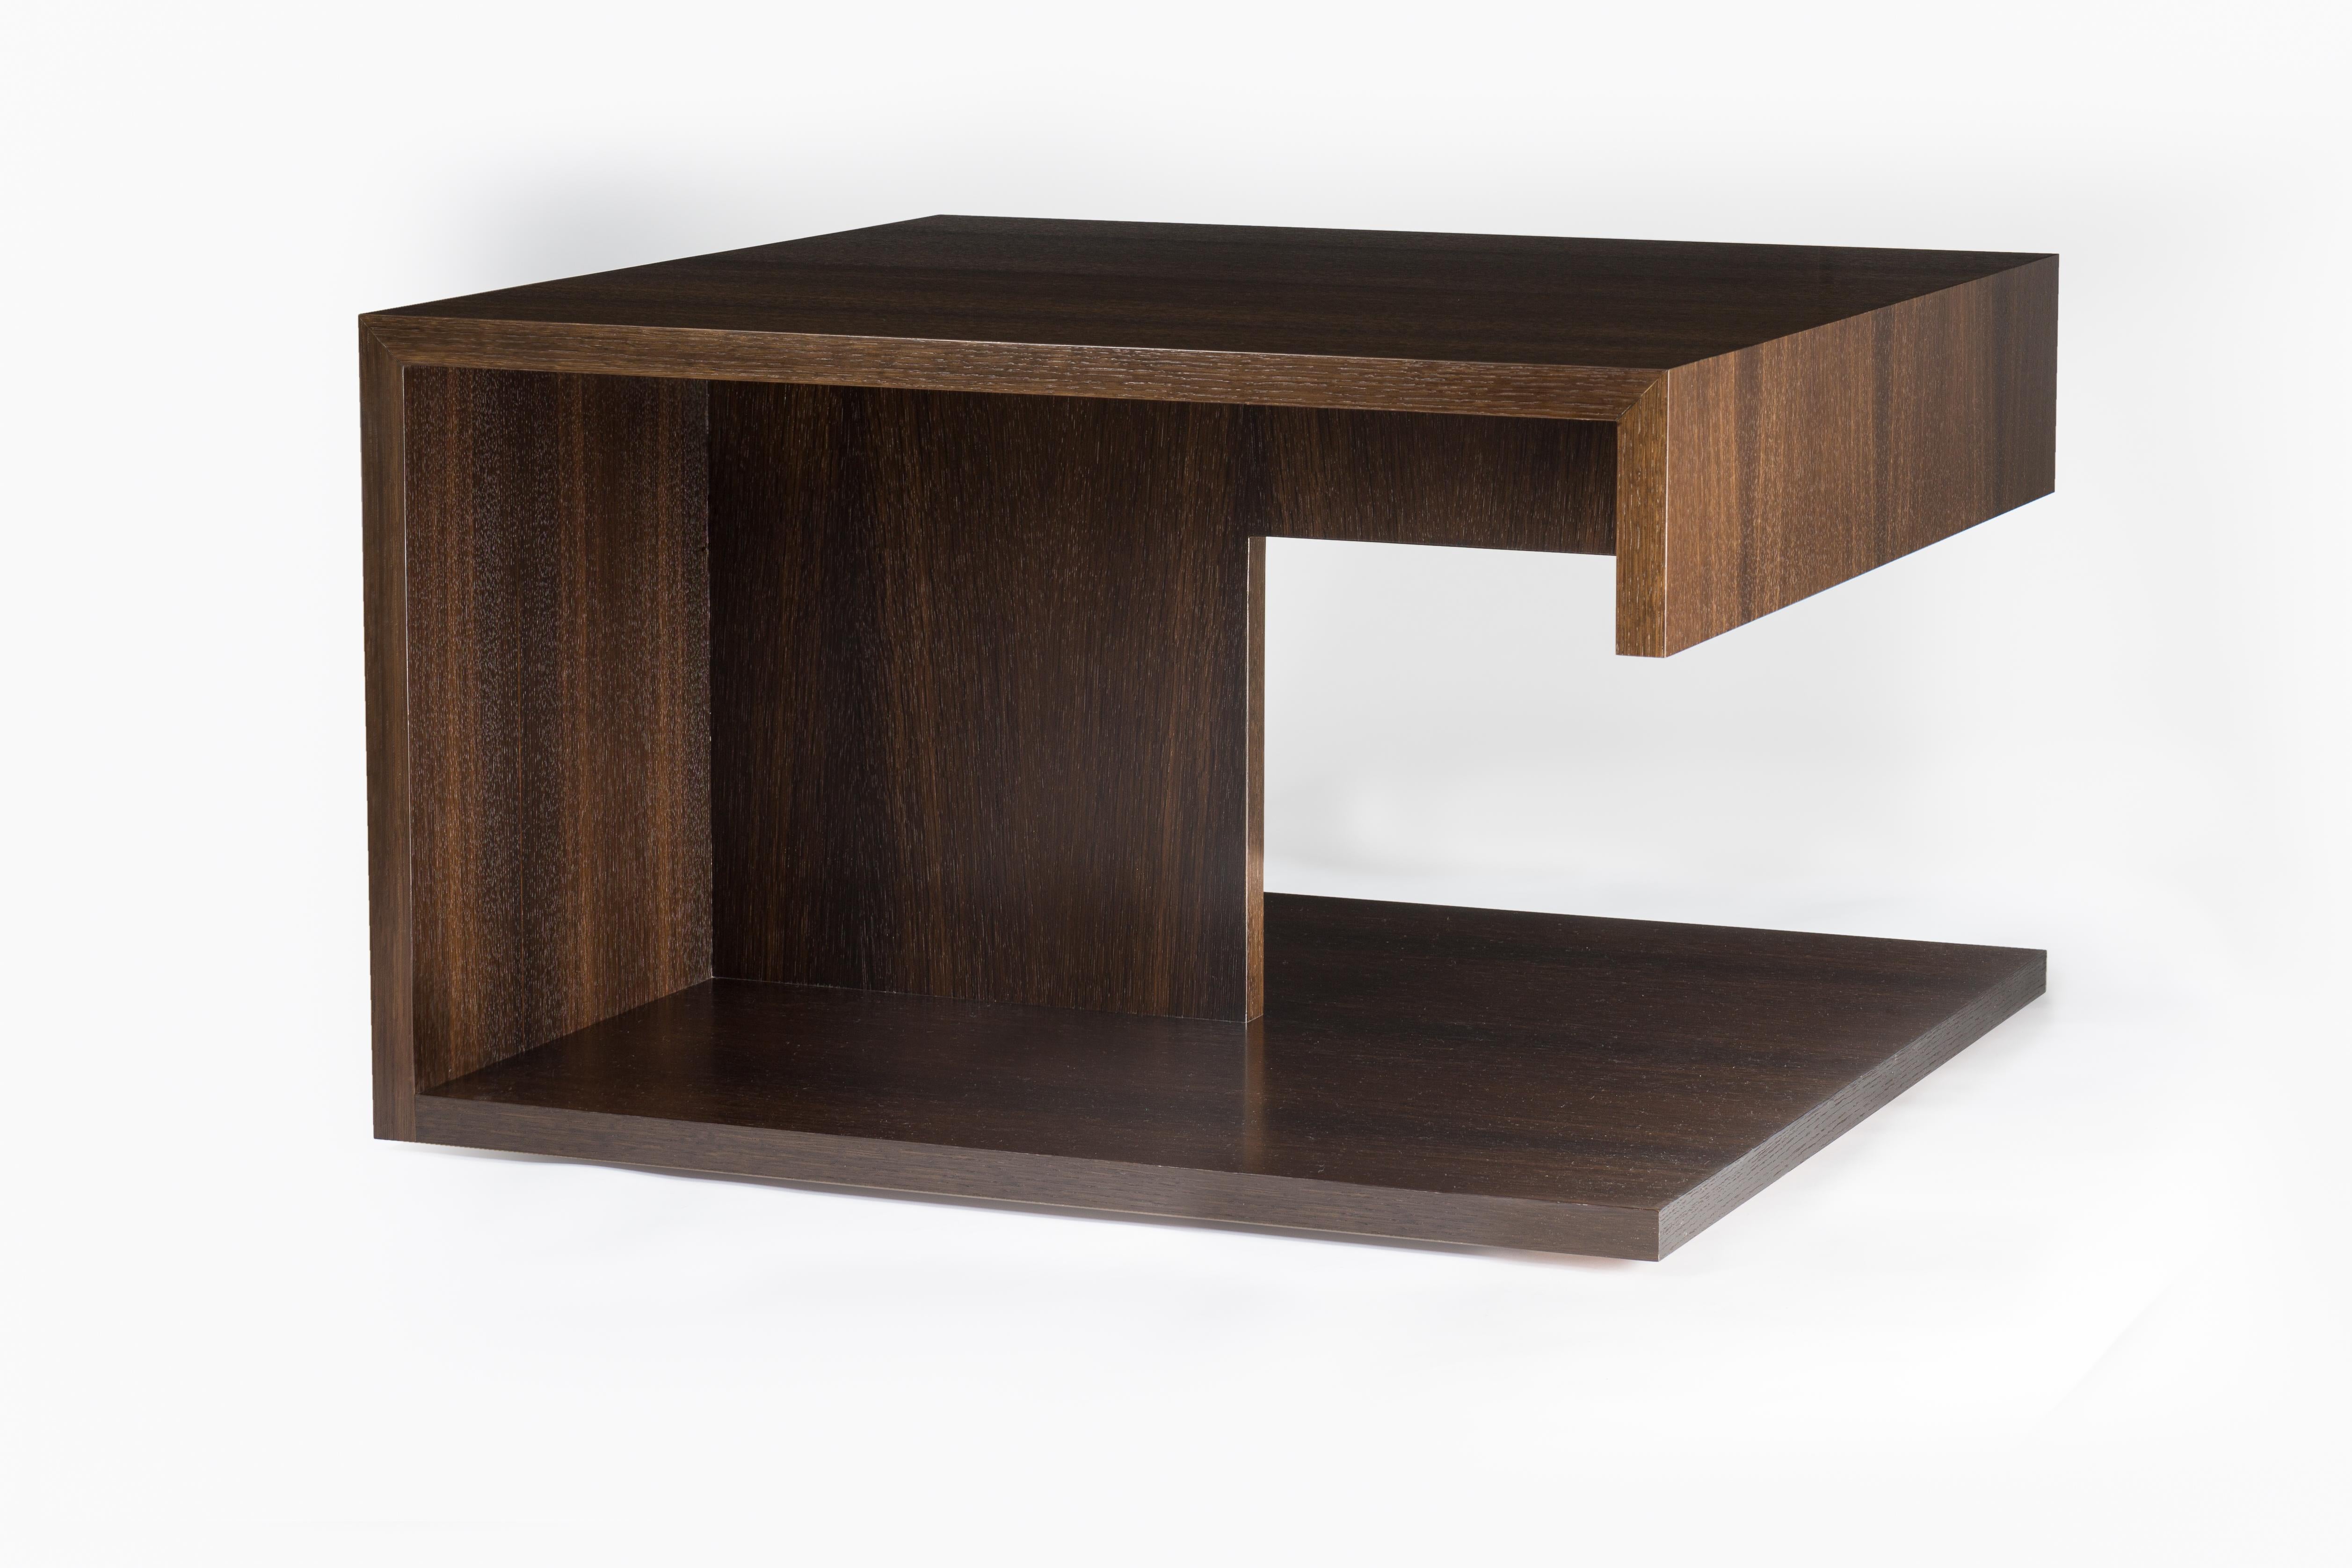 Cette version de notre table d'appoint moderne en bois s'appelle la table 